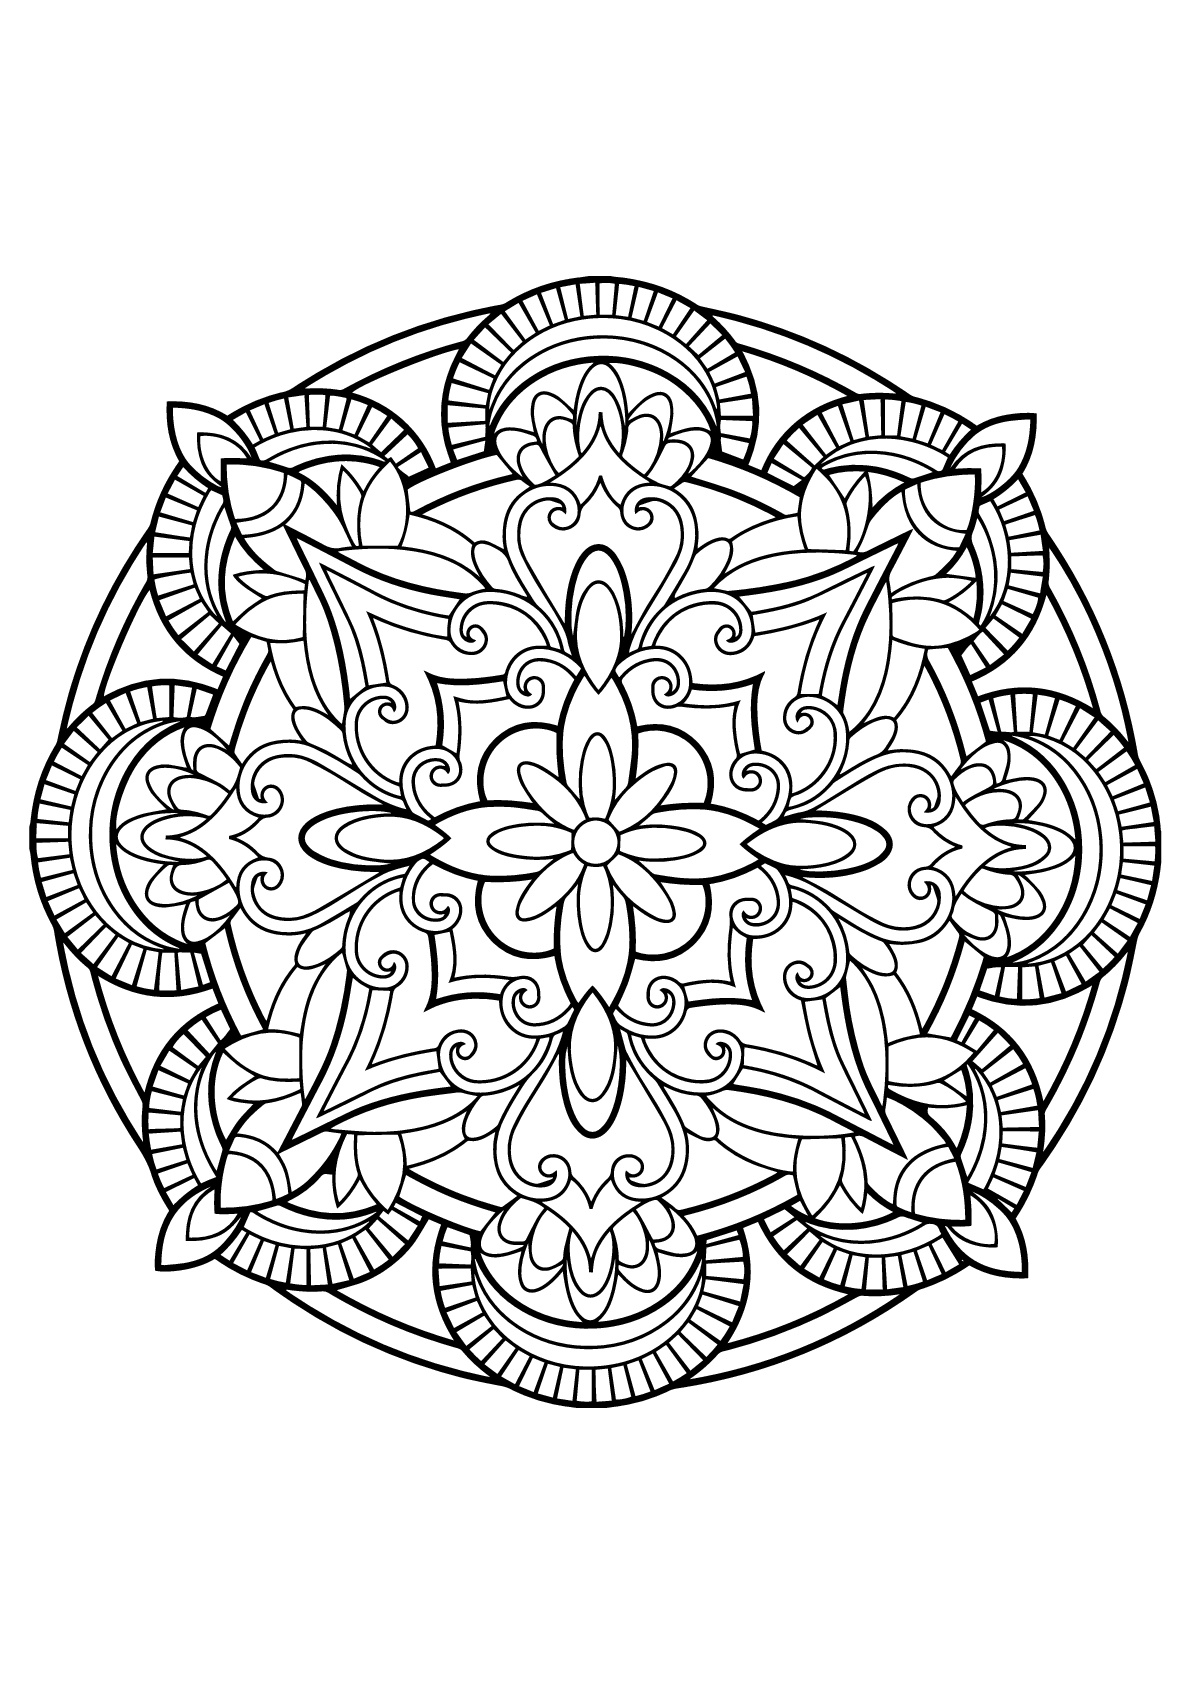 Mandala complexa de um livro de coloração livre